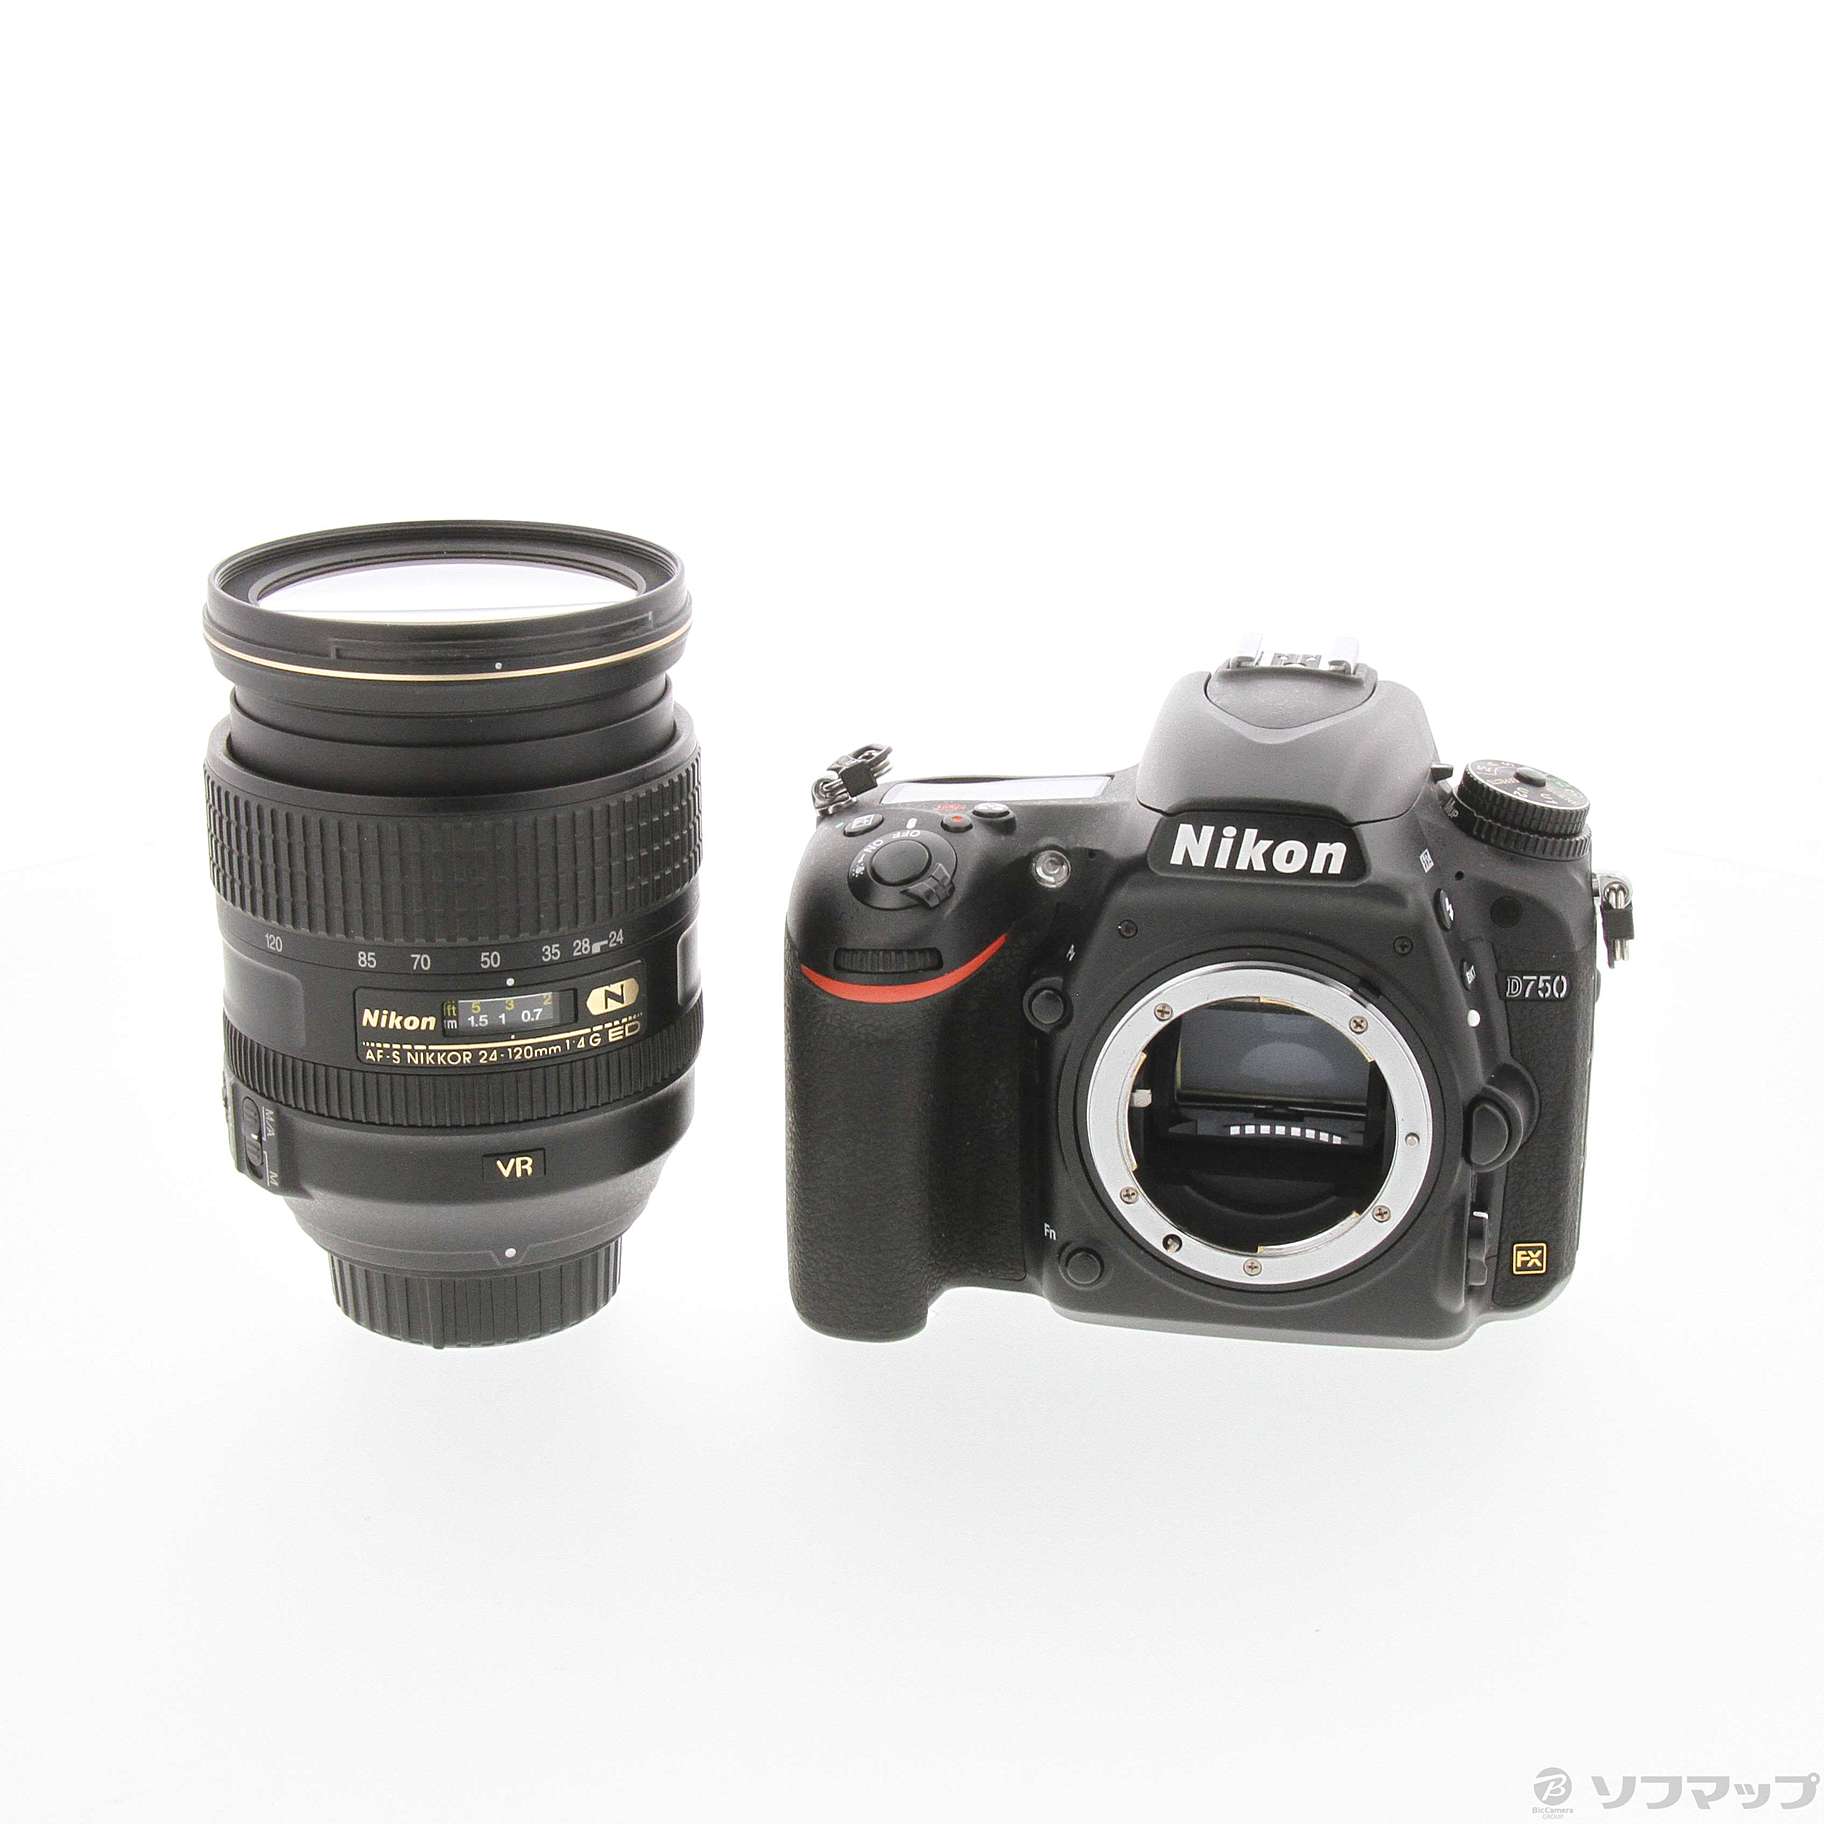 中古】Nikon D750 24-120 VR レンズキット [2133049805492] - リコレ